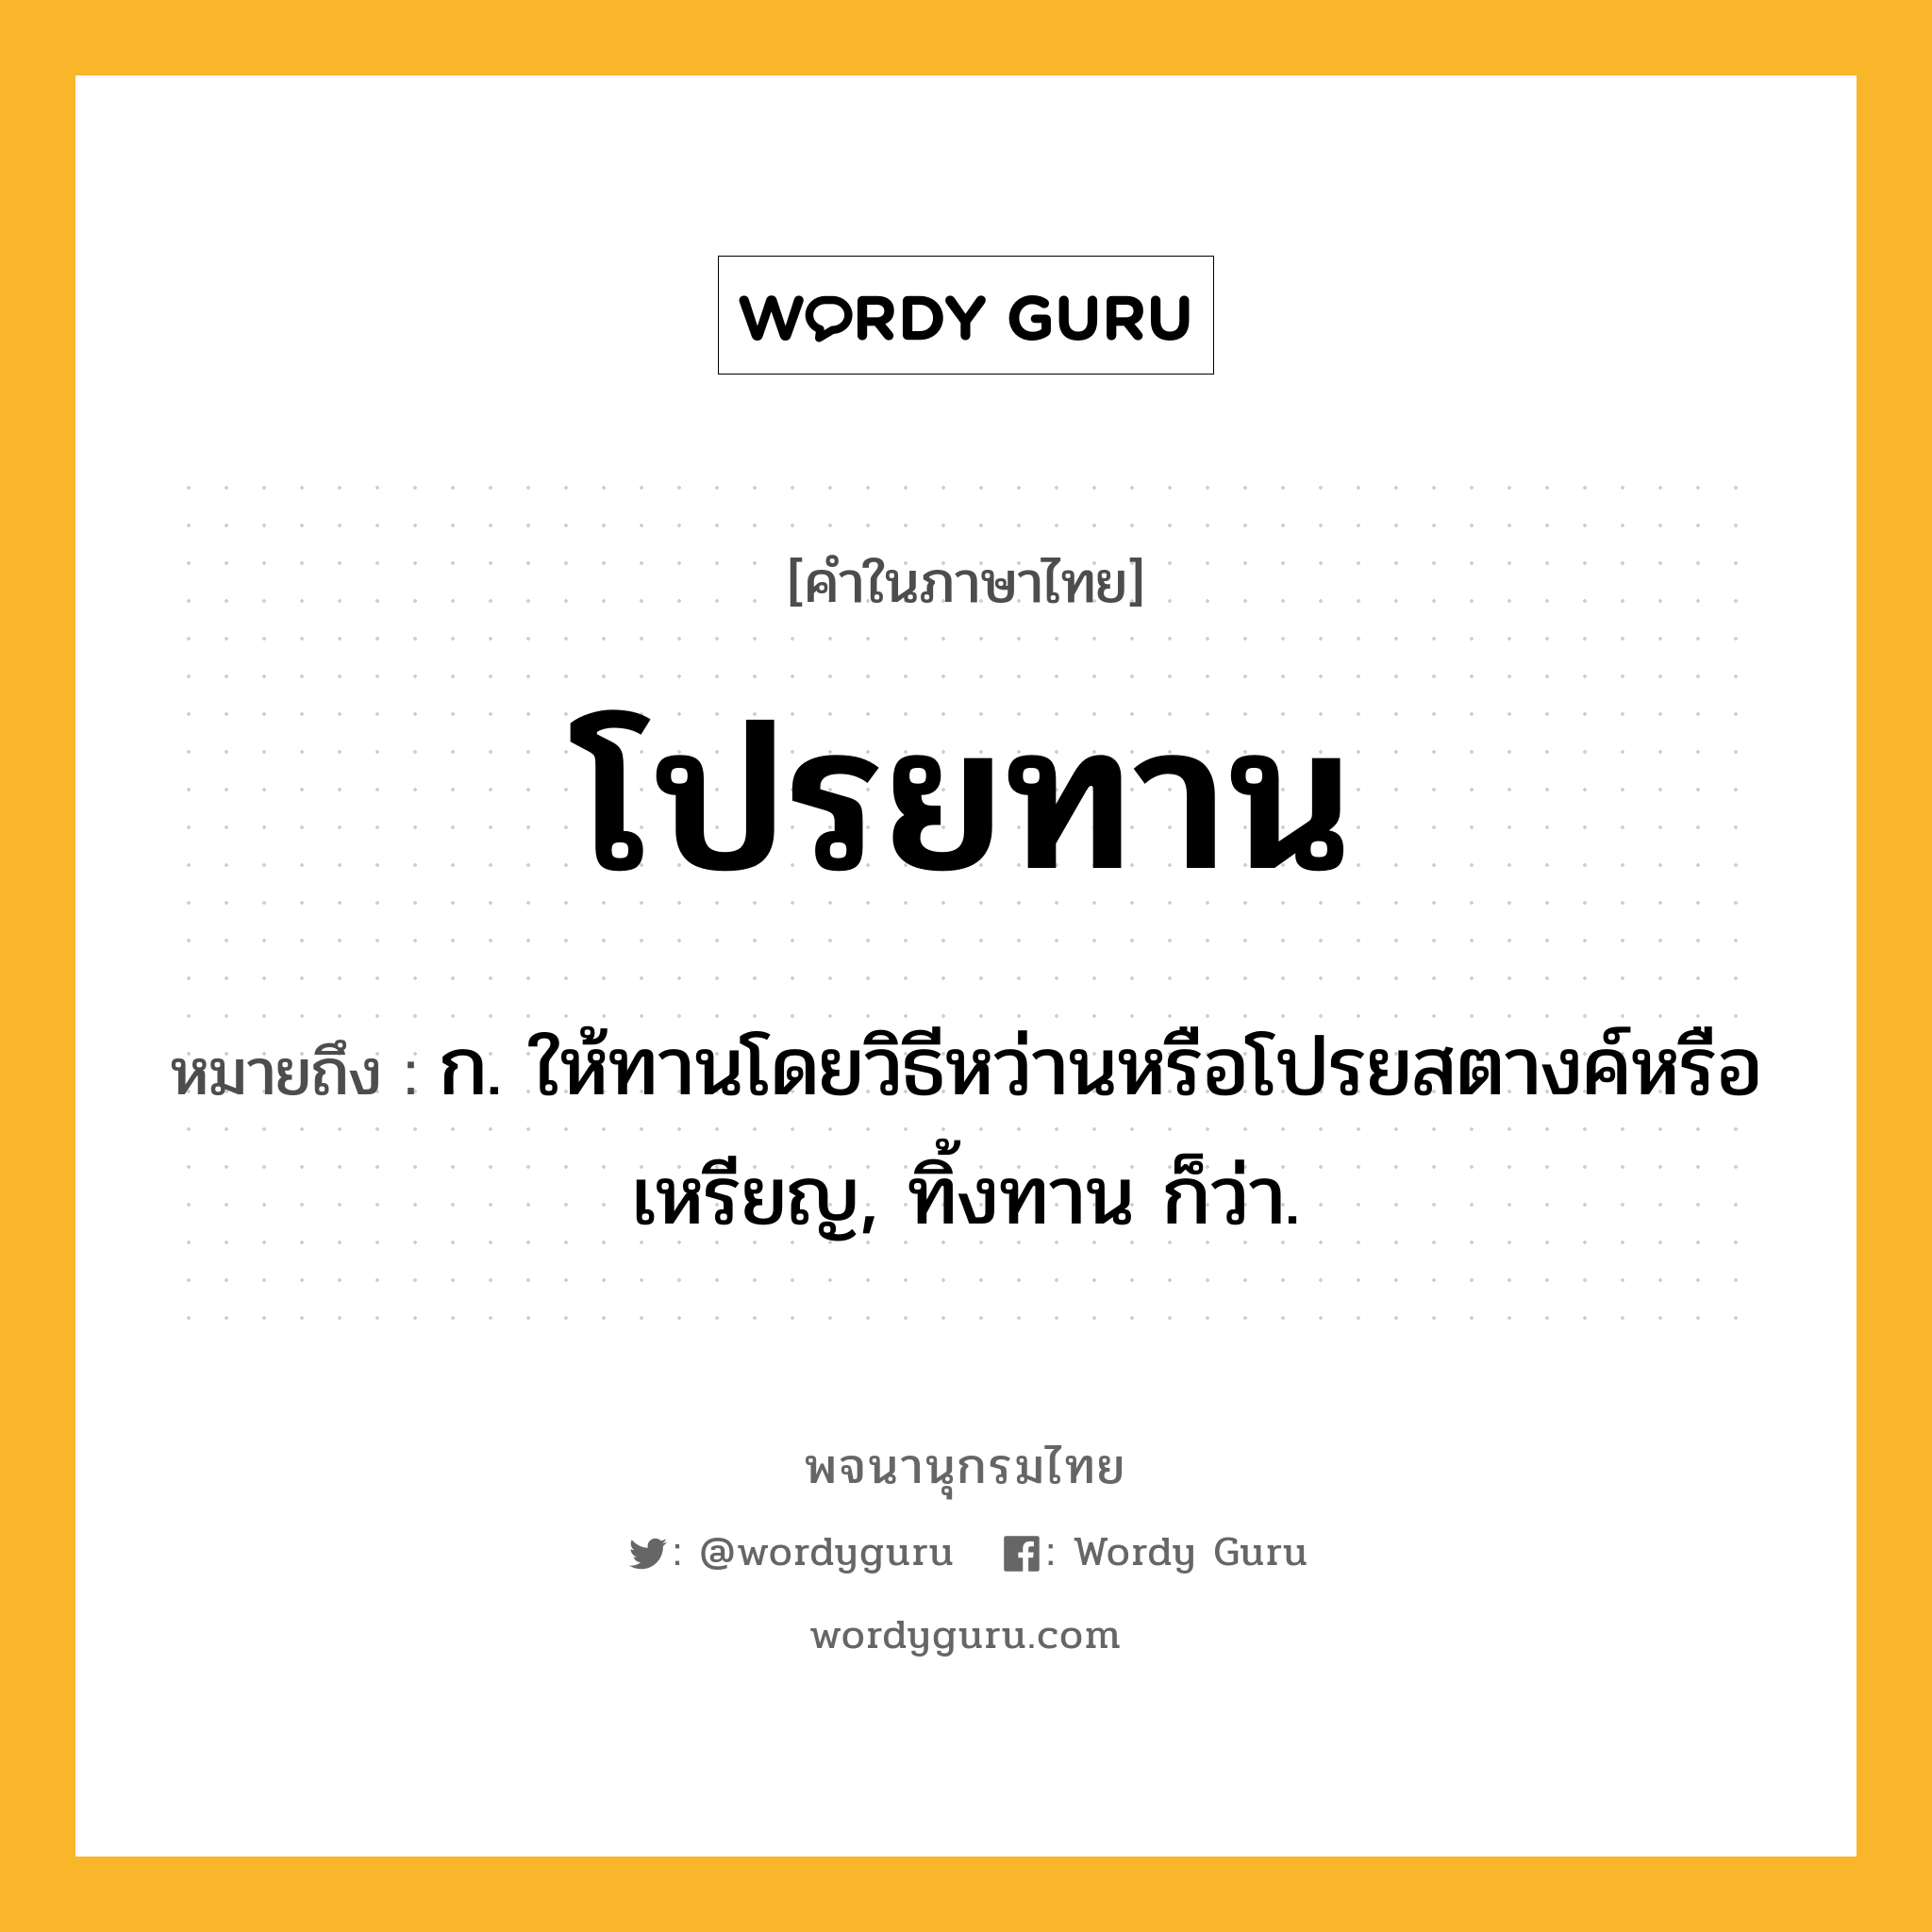 โปรยทาน หมายถึงอะไร?, คำในภาษาไทย โปรยทาน หมายถึง ก. ให้ทานโดยวิธีหว่านหรือโปรยสตางค์หรือเหรียญ, ทิ้งทาน ก็ว่า.